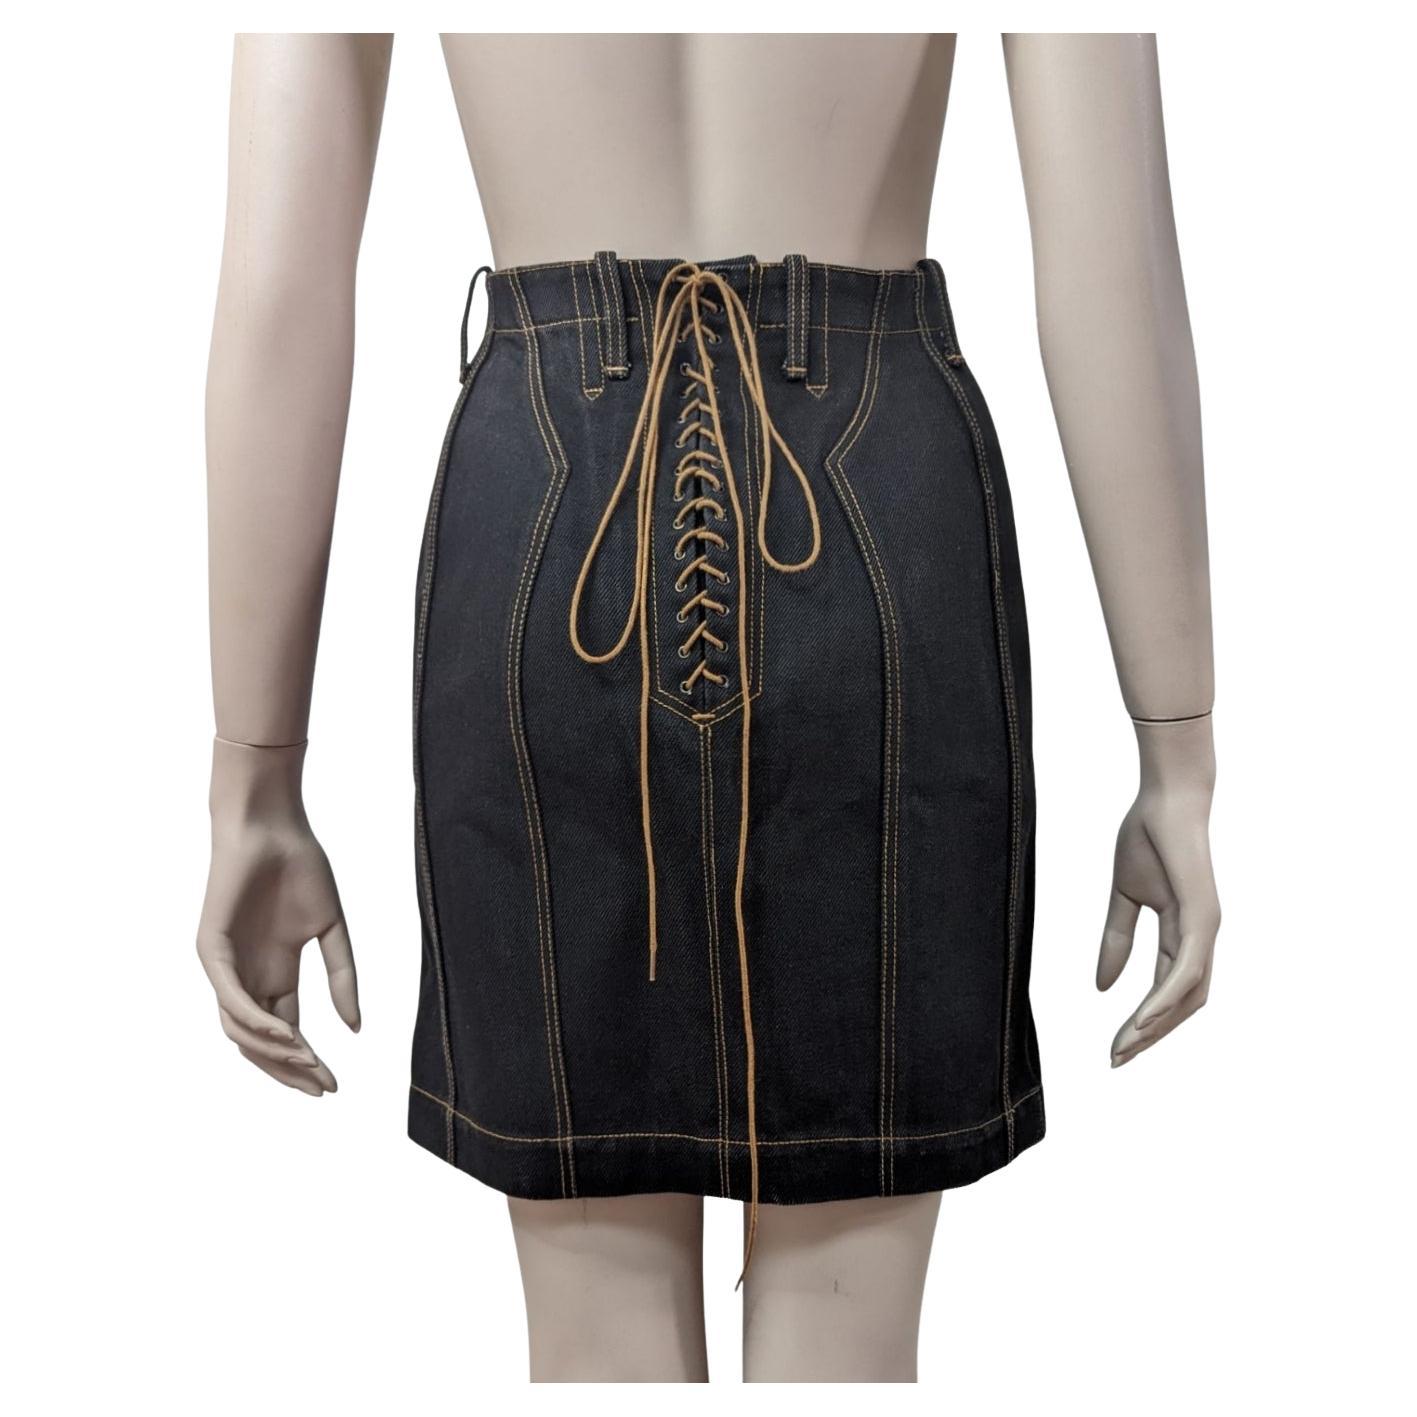 Azzedine Alaïa S/S 1991 High Waist Lace-up Denim Skirt